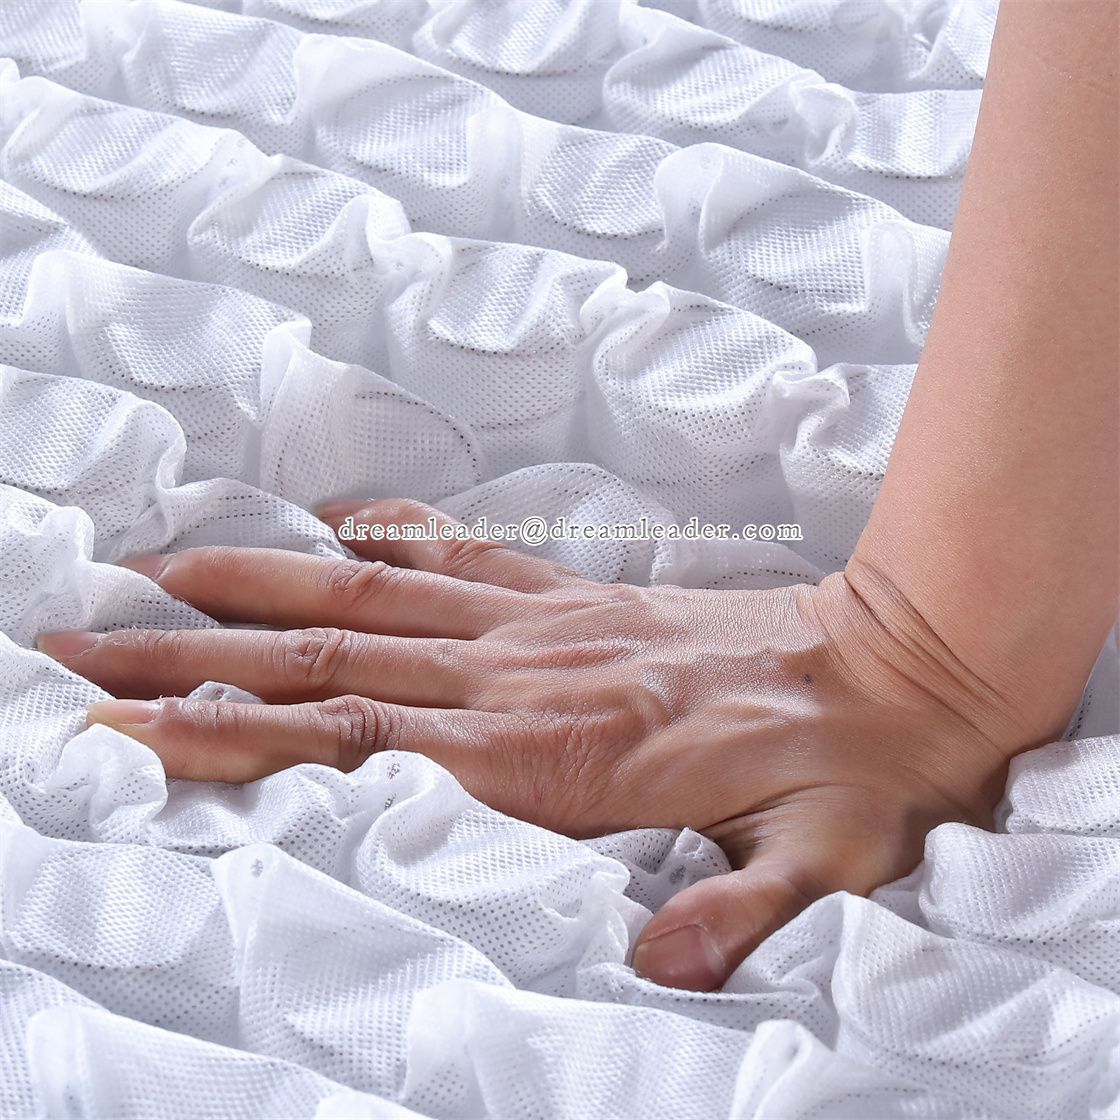 pocket spring vs foam mattress